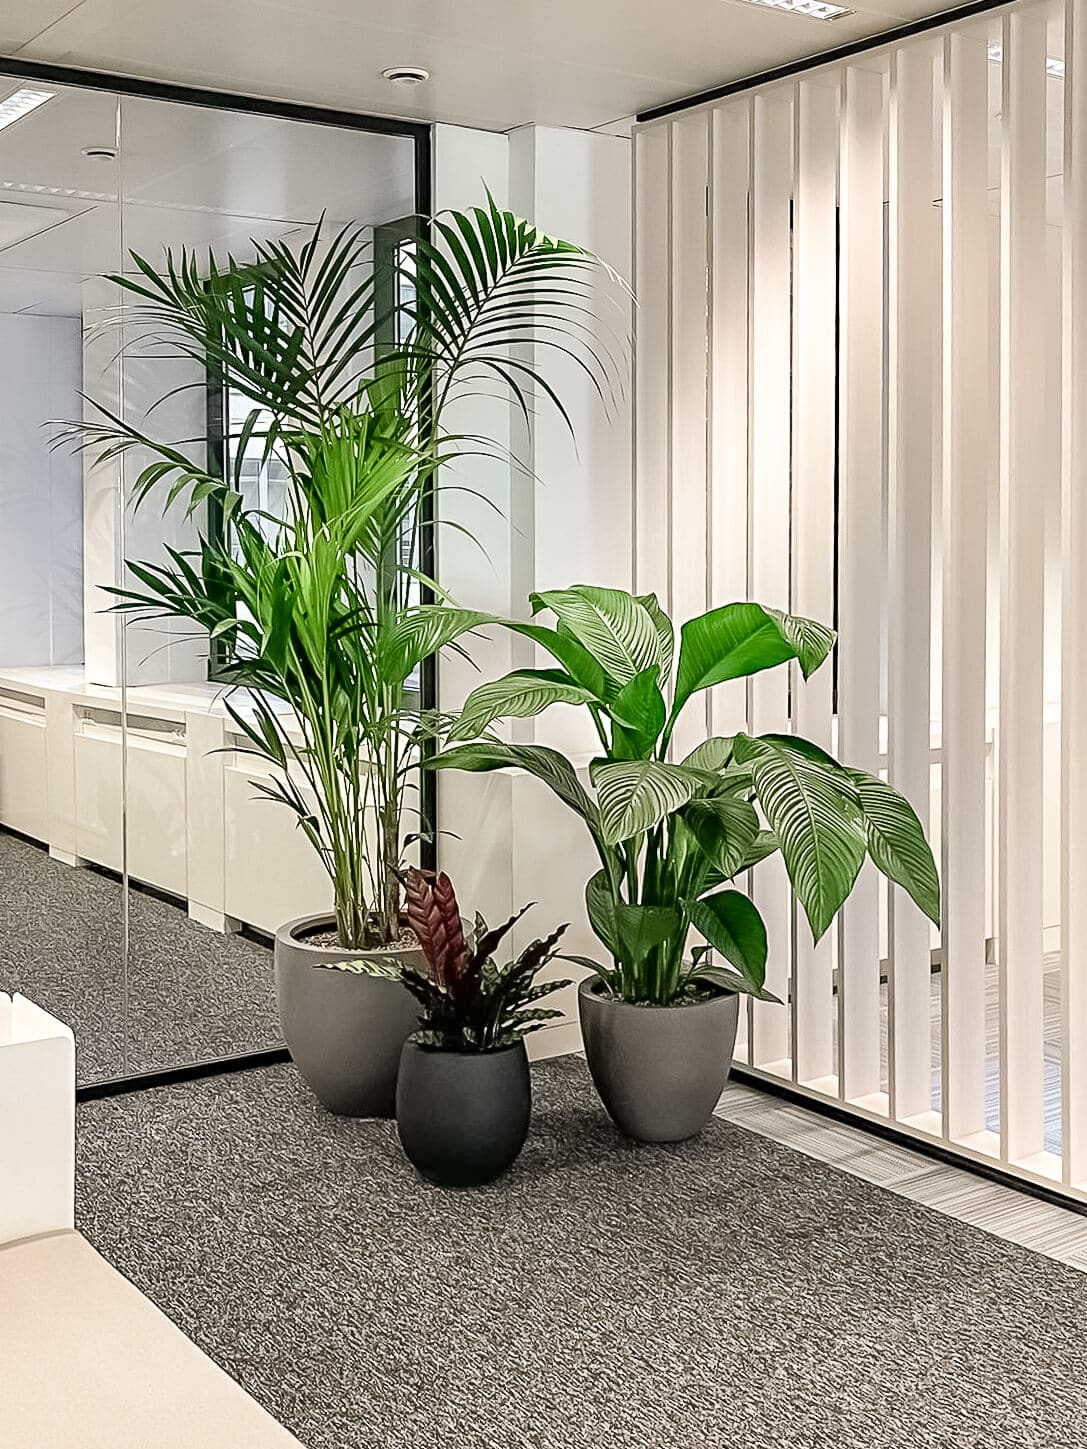 kantoor-spiegel-hoek-plant